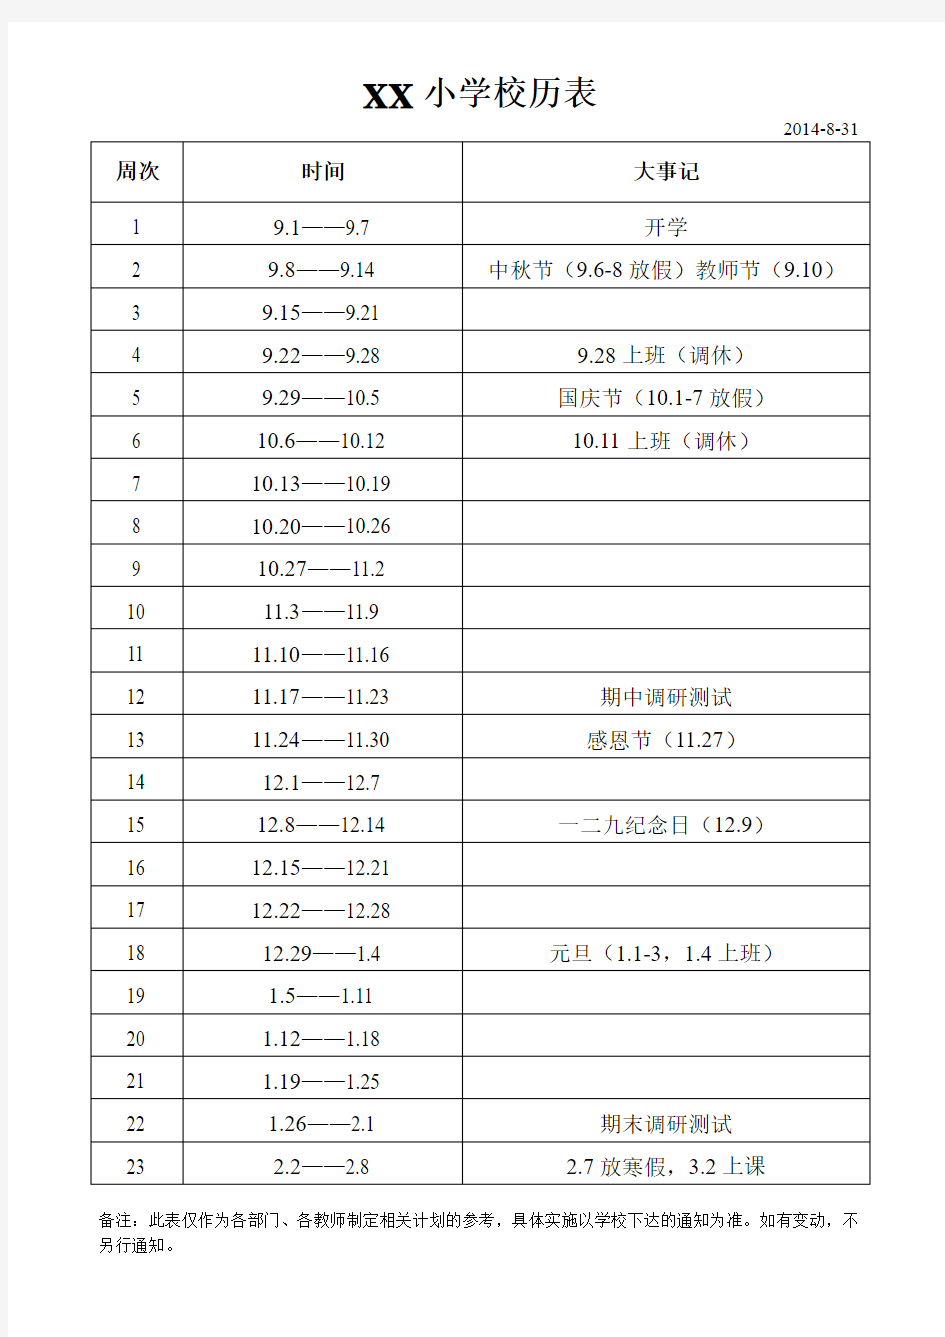 2014-2015学年XX小学校历表(第一学期)